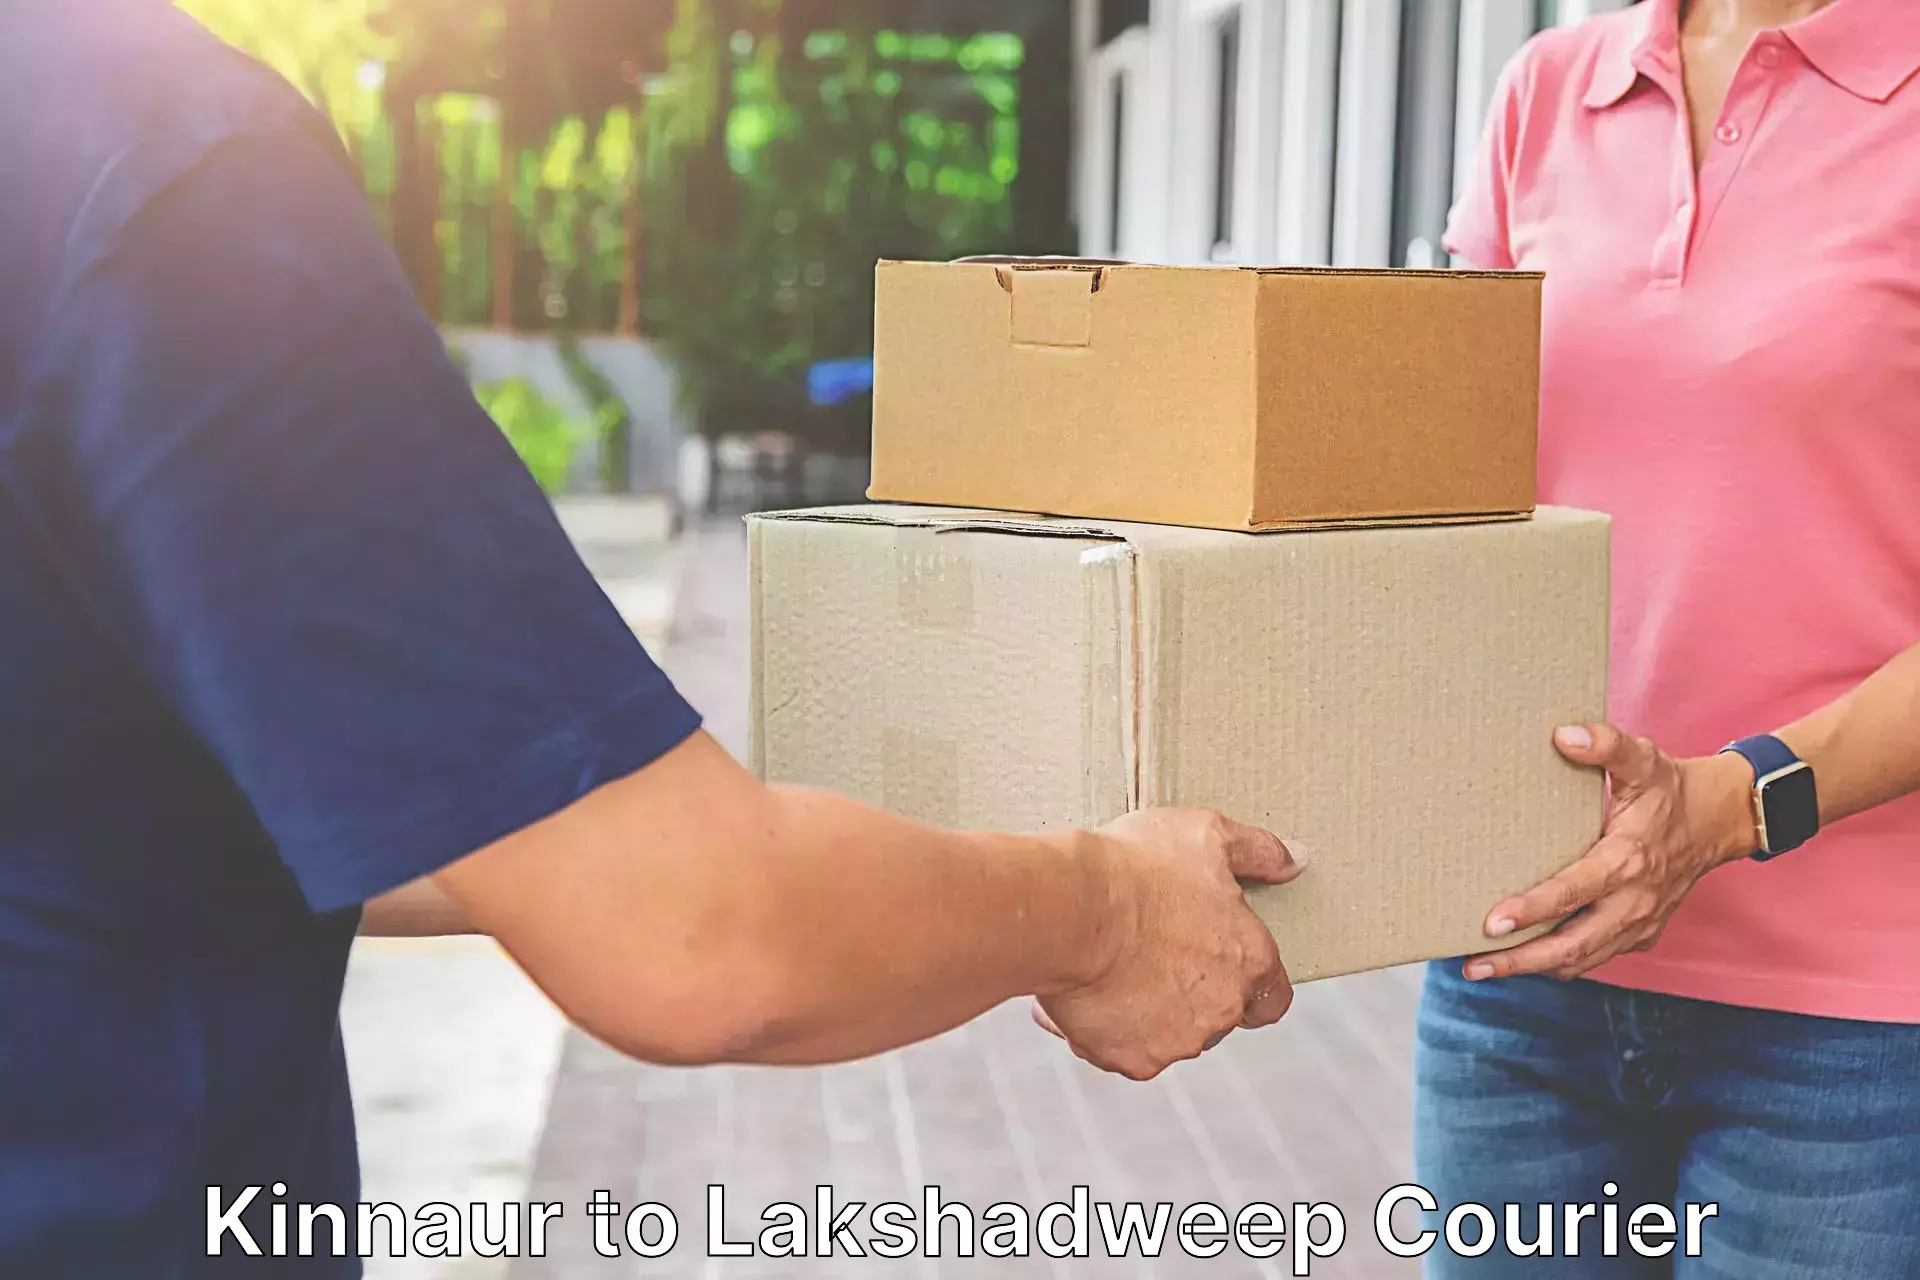 Affordable parcel service Kinnaur to Lakshadweep